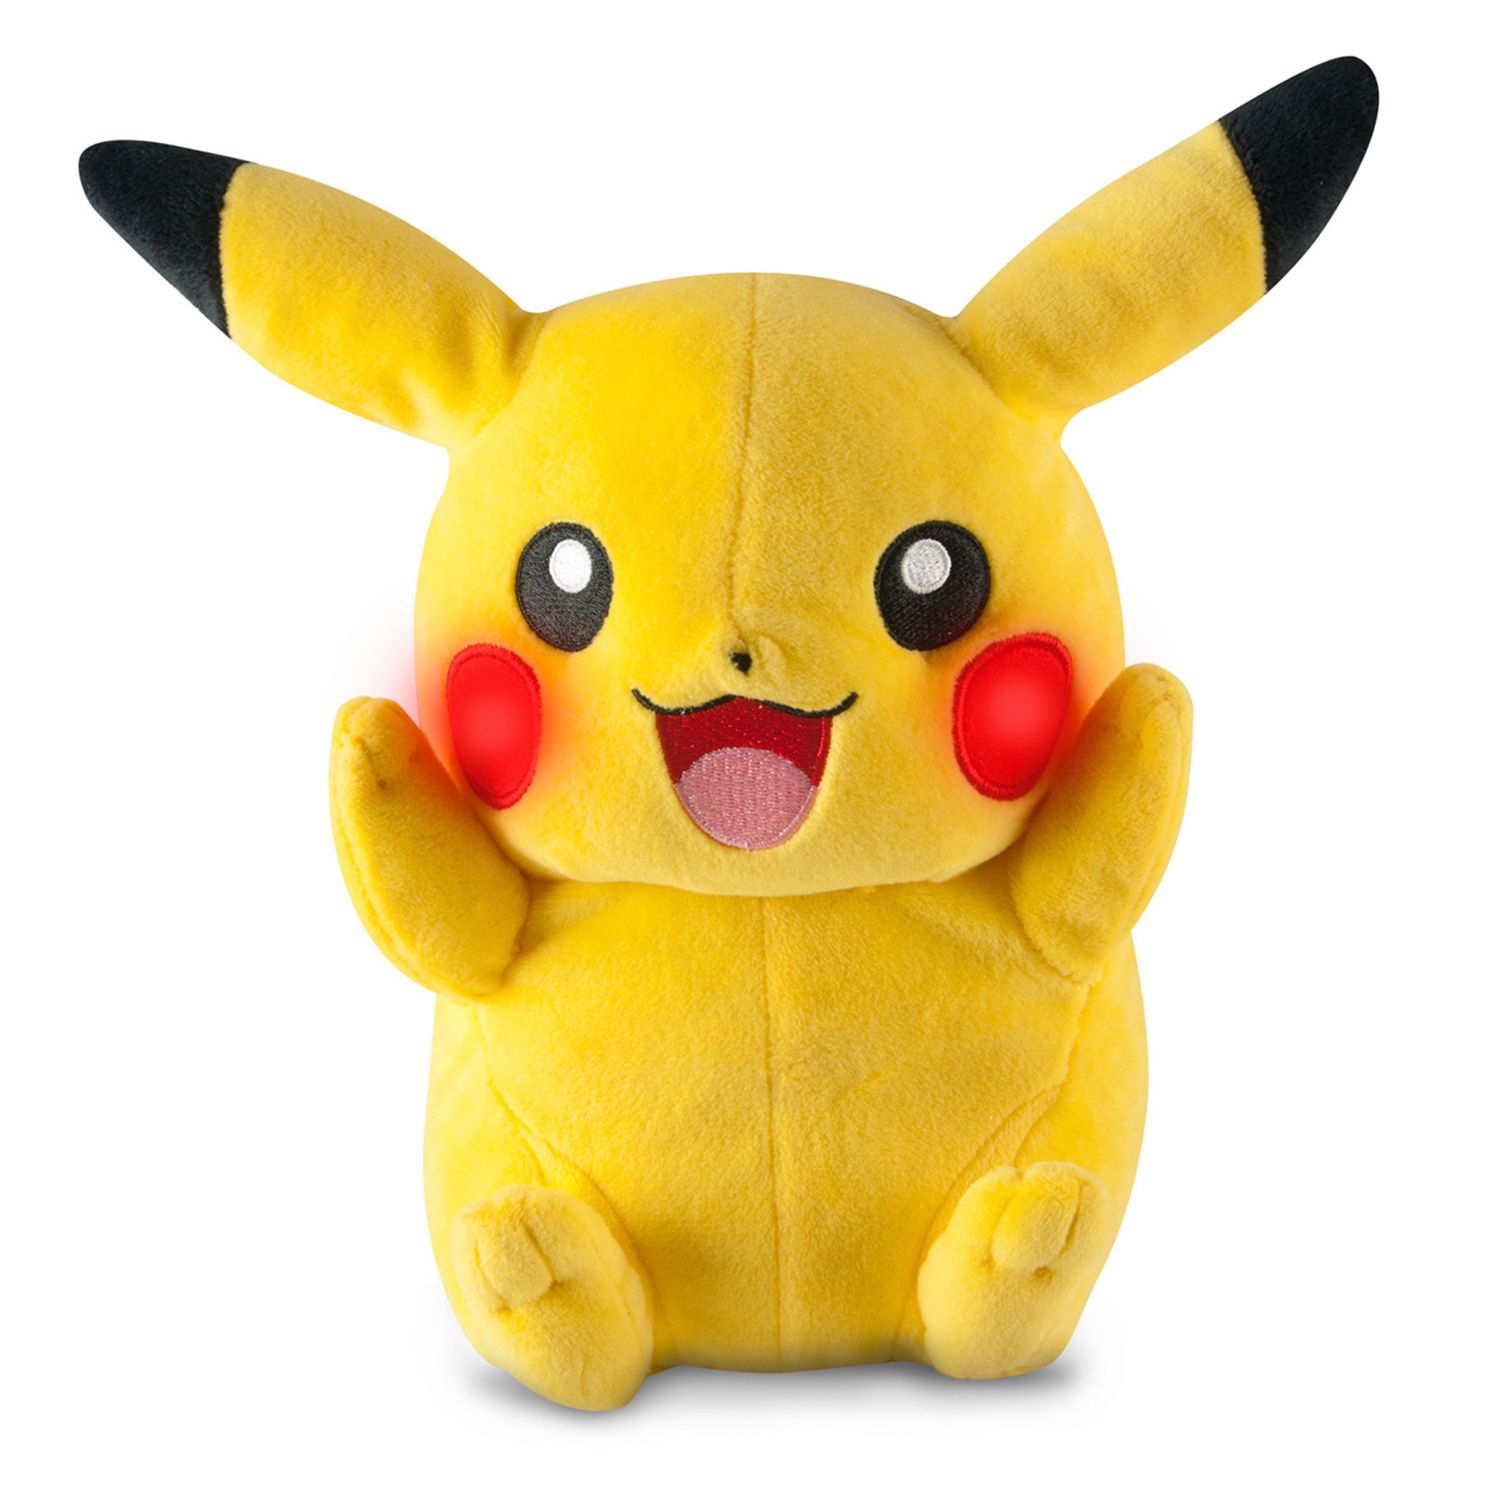 pikachu stuffed animal